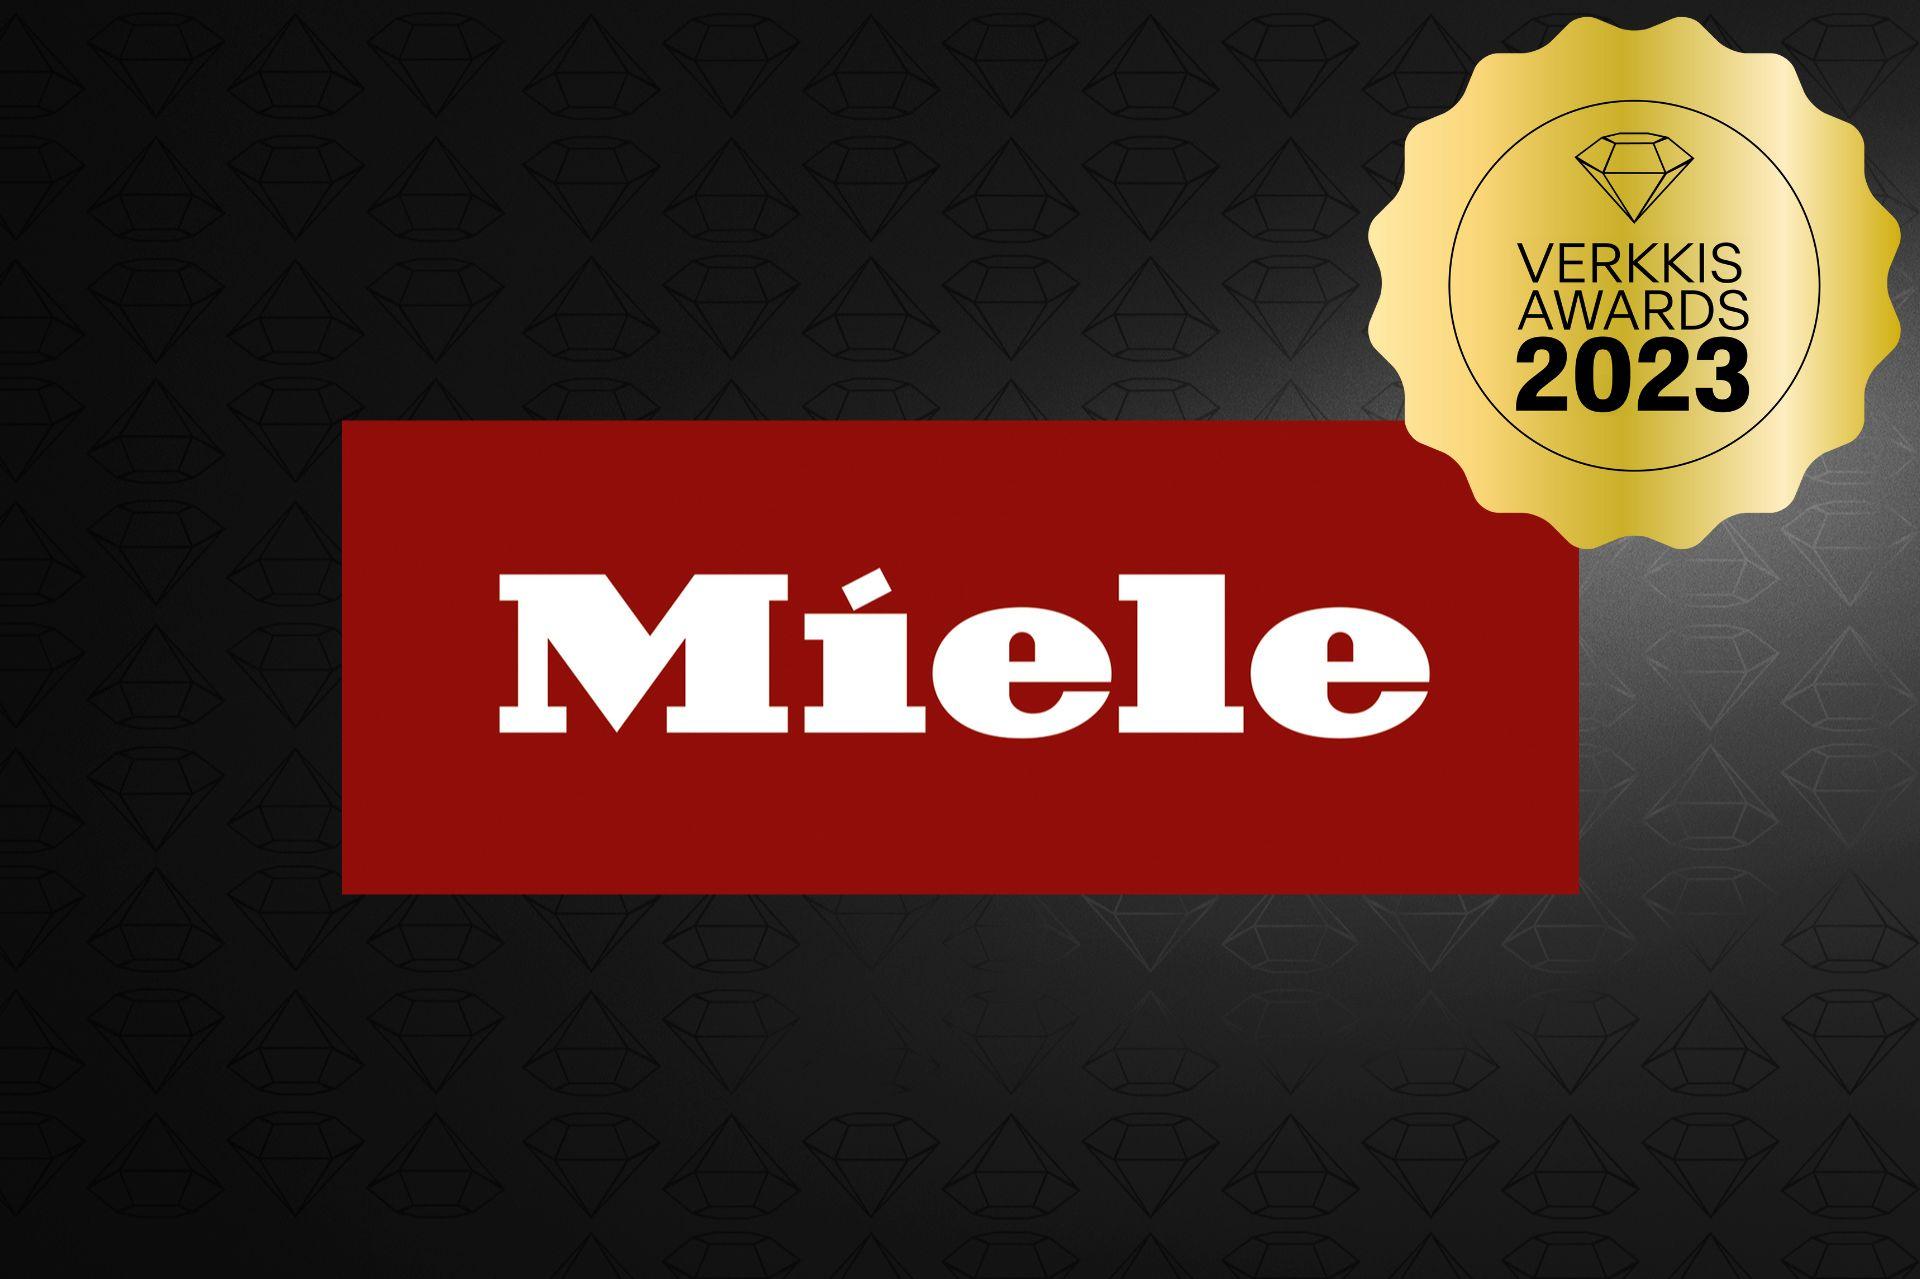 Miele – Verkkis Awards 2023 voittaja!